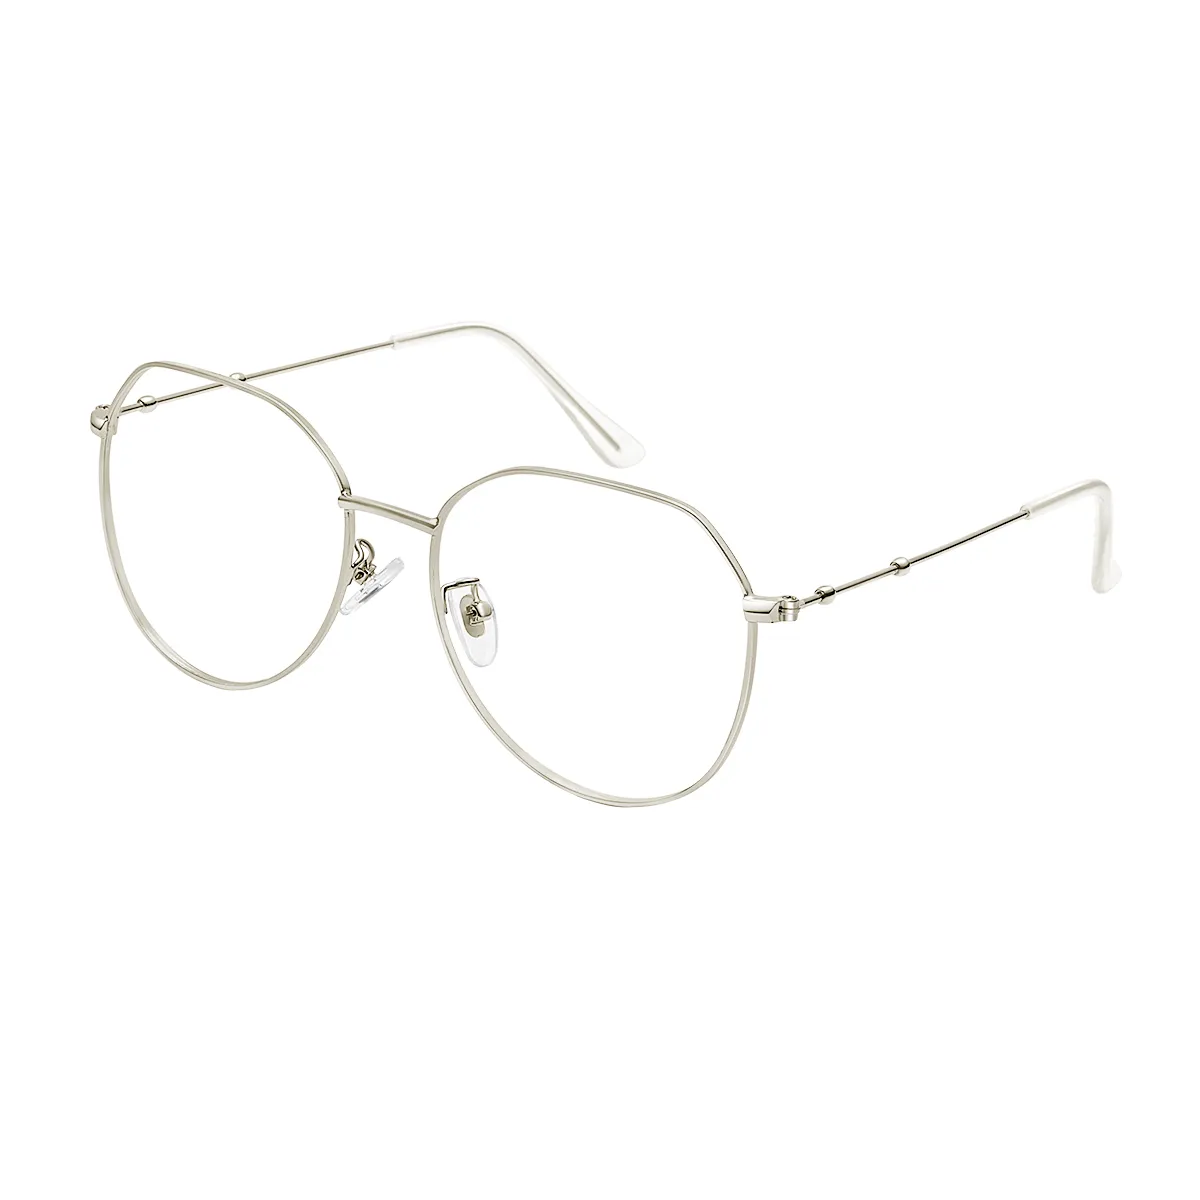 Fashion Aviator Gold Eyeglasses for Women & Men